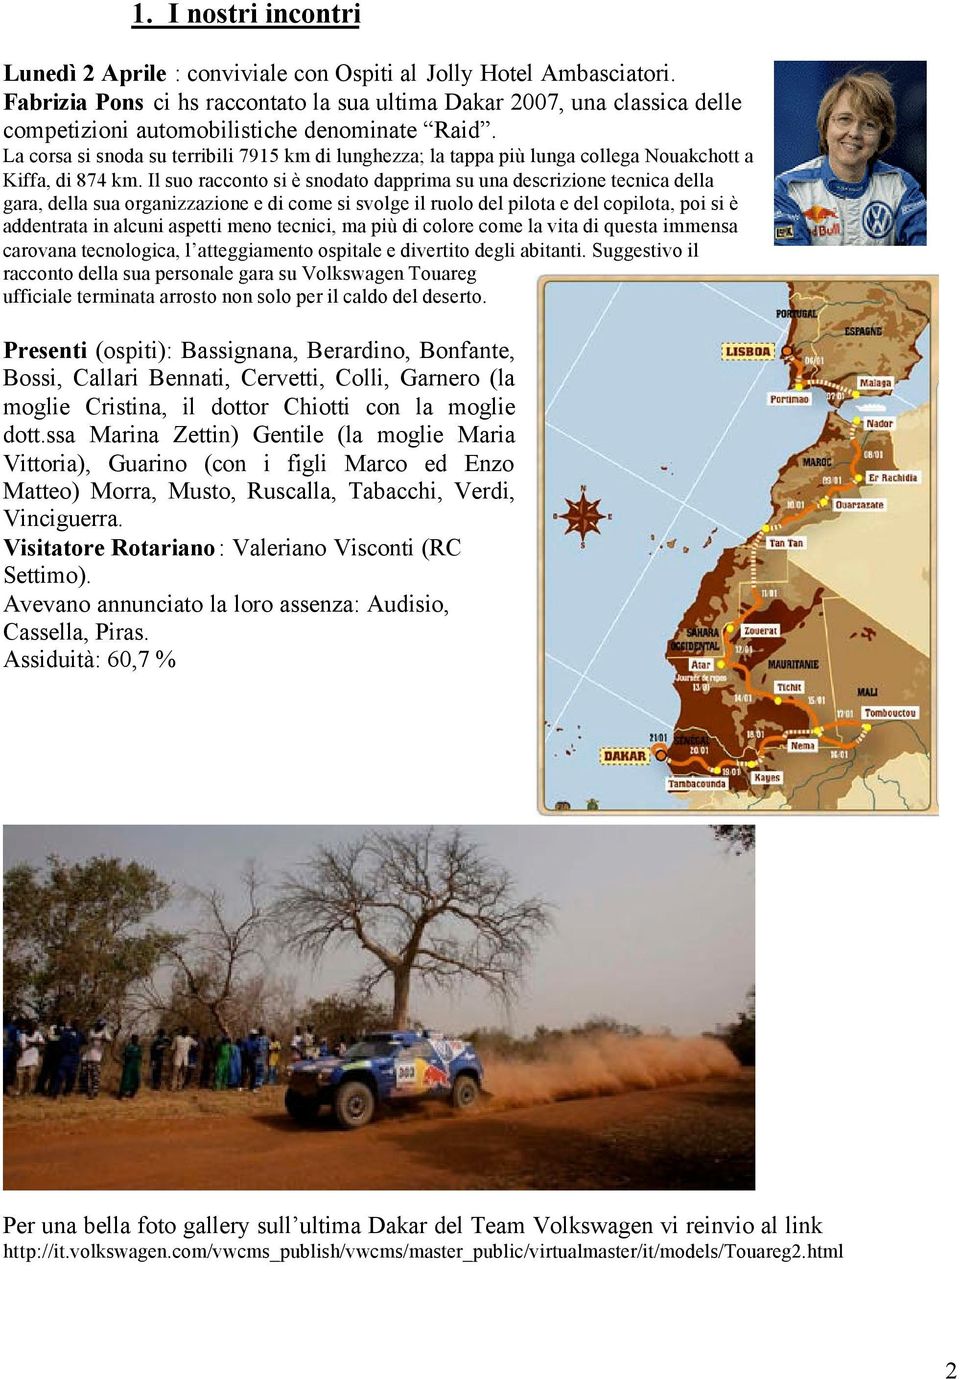 La corsa si snoda su terribili 7915 km di lunghezza; la tappa più lunga collega Nouakchott a Kiffa, di 874 km.